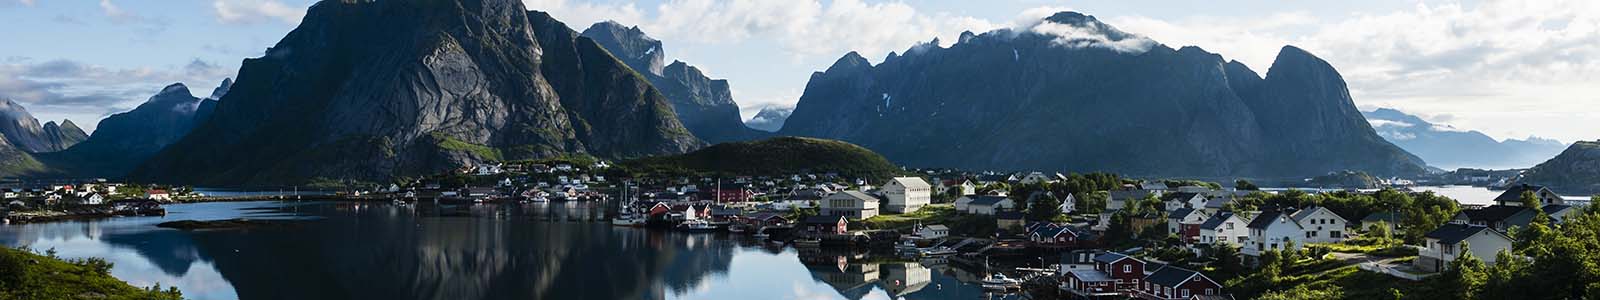 De beste reistijd voor Noorwegen, Finland en Zweden